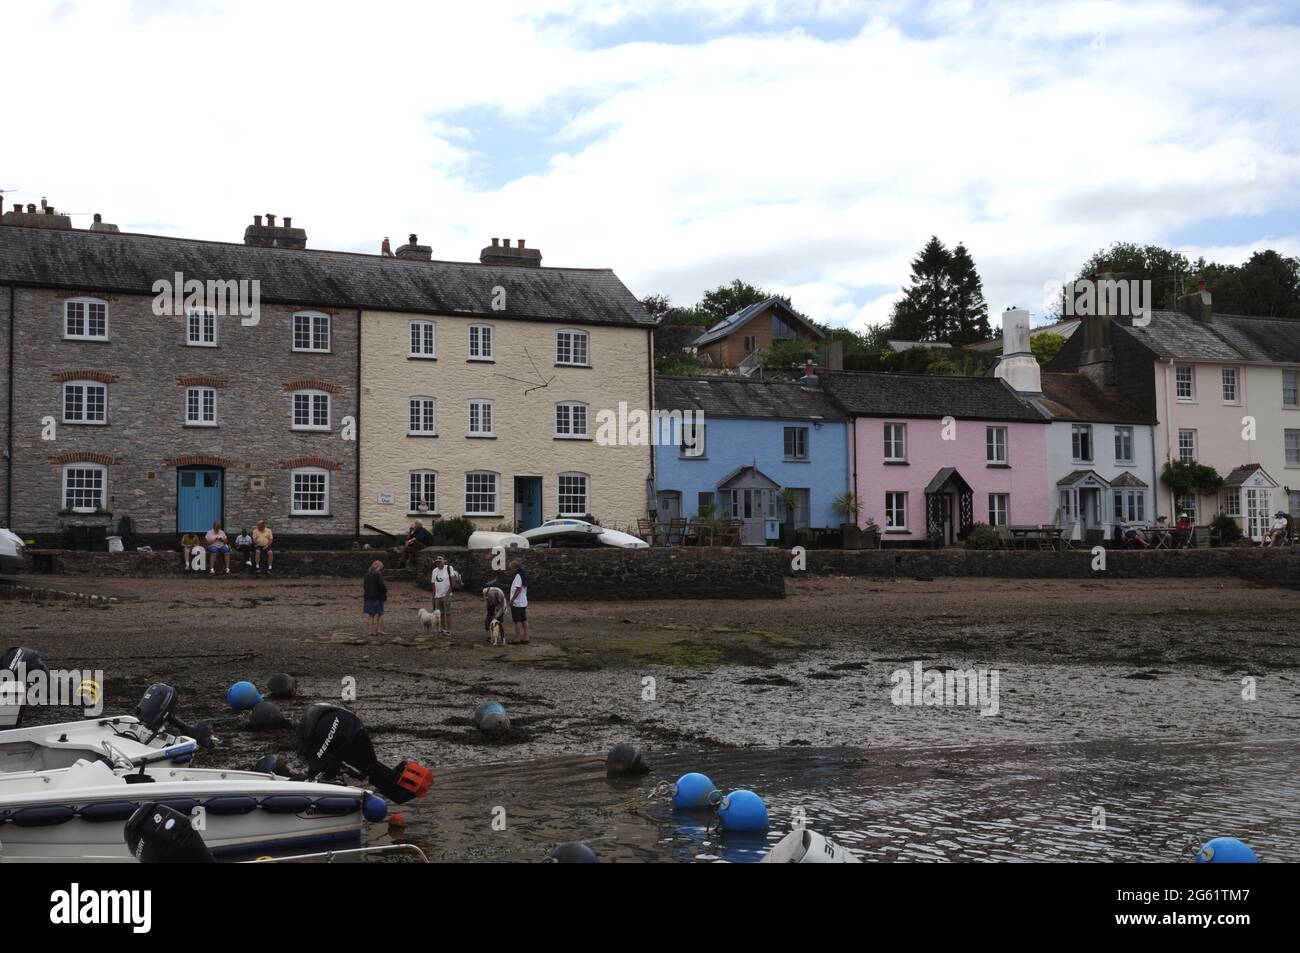 Les maisons aux couleurs pastel et les bâtiments au bord du quai de Dittisham, dans le quartier de South Hams, donnent sur la rivière Dart Banque D'Images